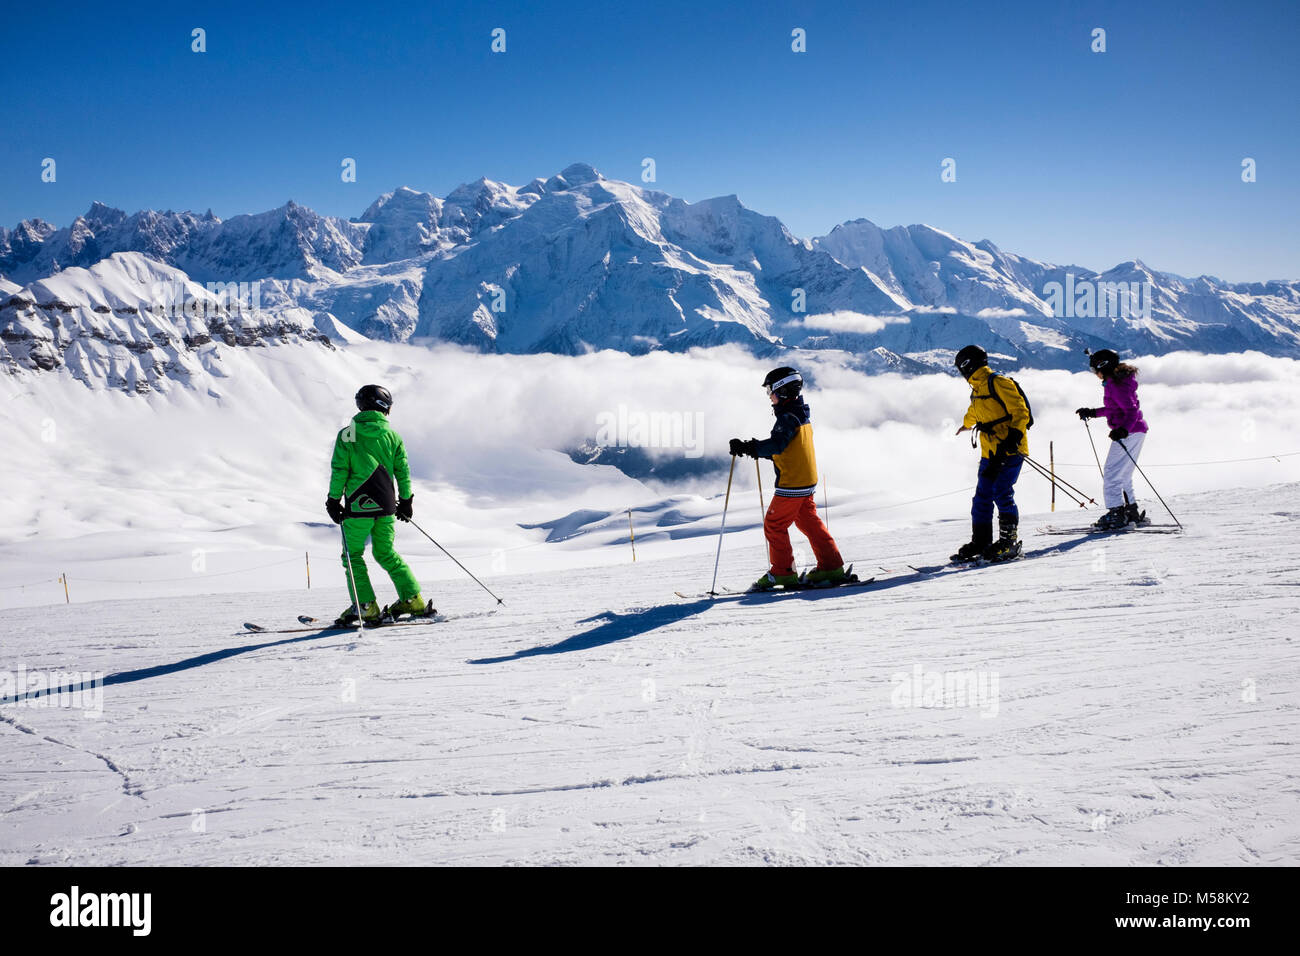 Les skieurs de ski ski sur la neige avec le Mont Blanc en toile de fond dans le Grand Massif dans les Alpes. Têtes des Lindars Flaine Haute Savoie Rhone-Alpes France Banque D'Images